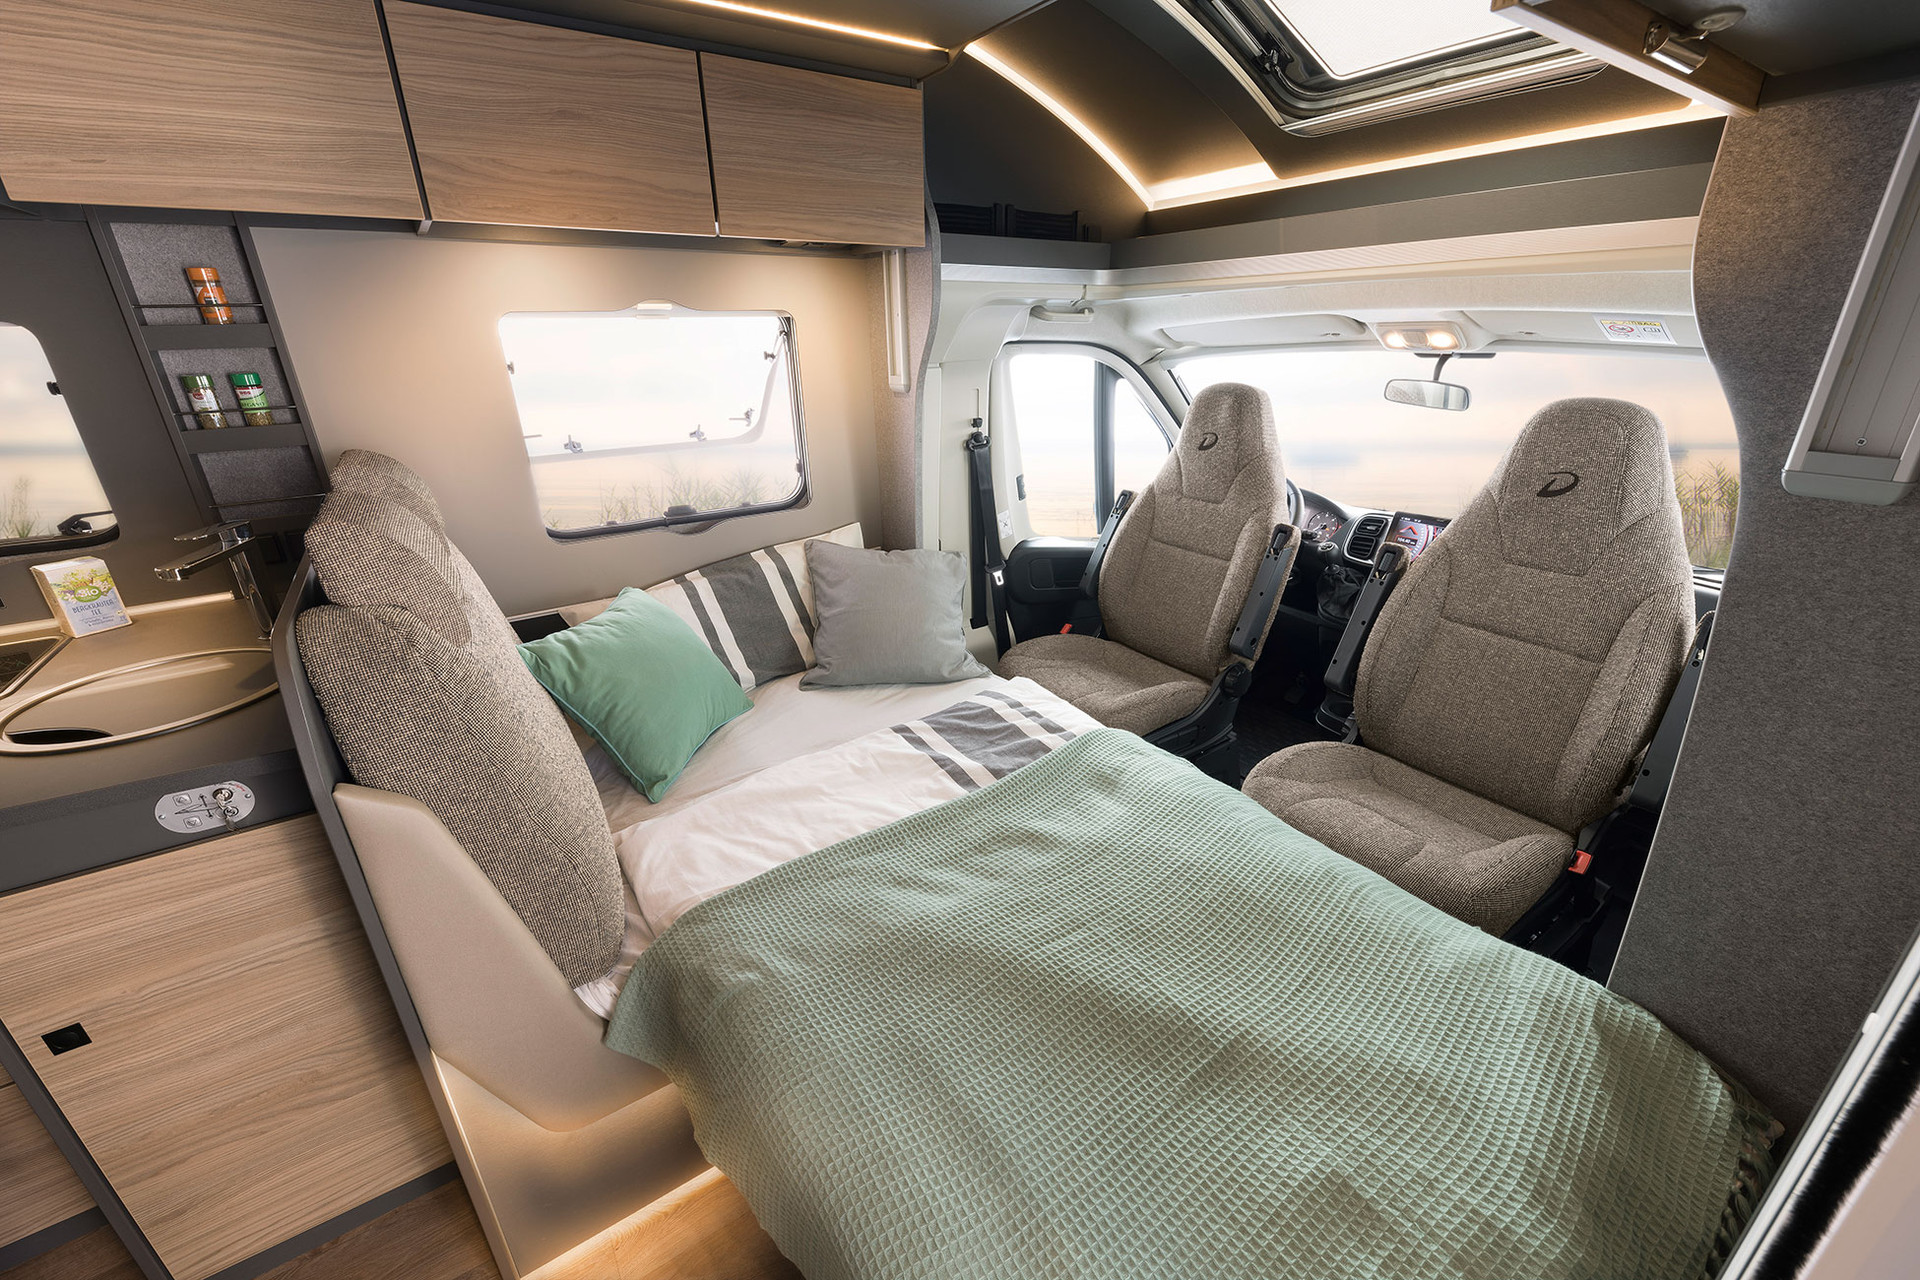 W niektórych pojazdach częściowo zintegrowanych w razie potrzeby kanapę można przekształcić w dodatkowe łóżko (w zależności od modelu).